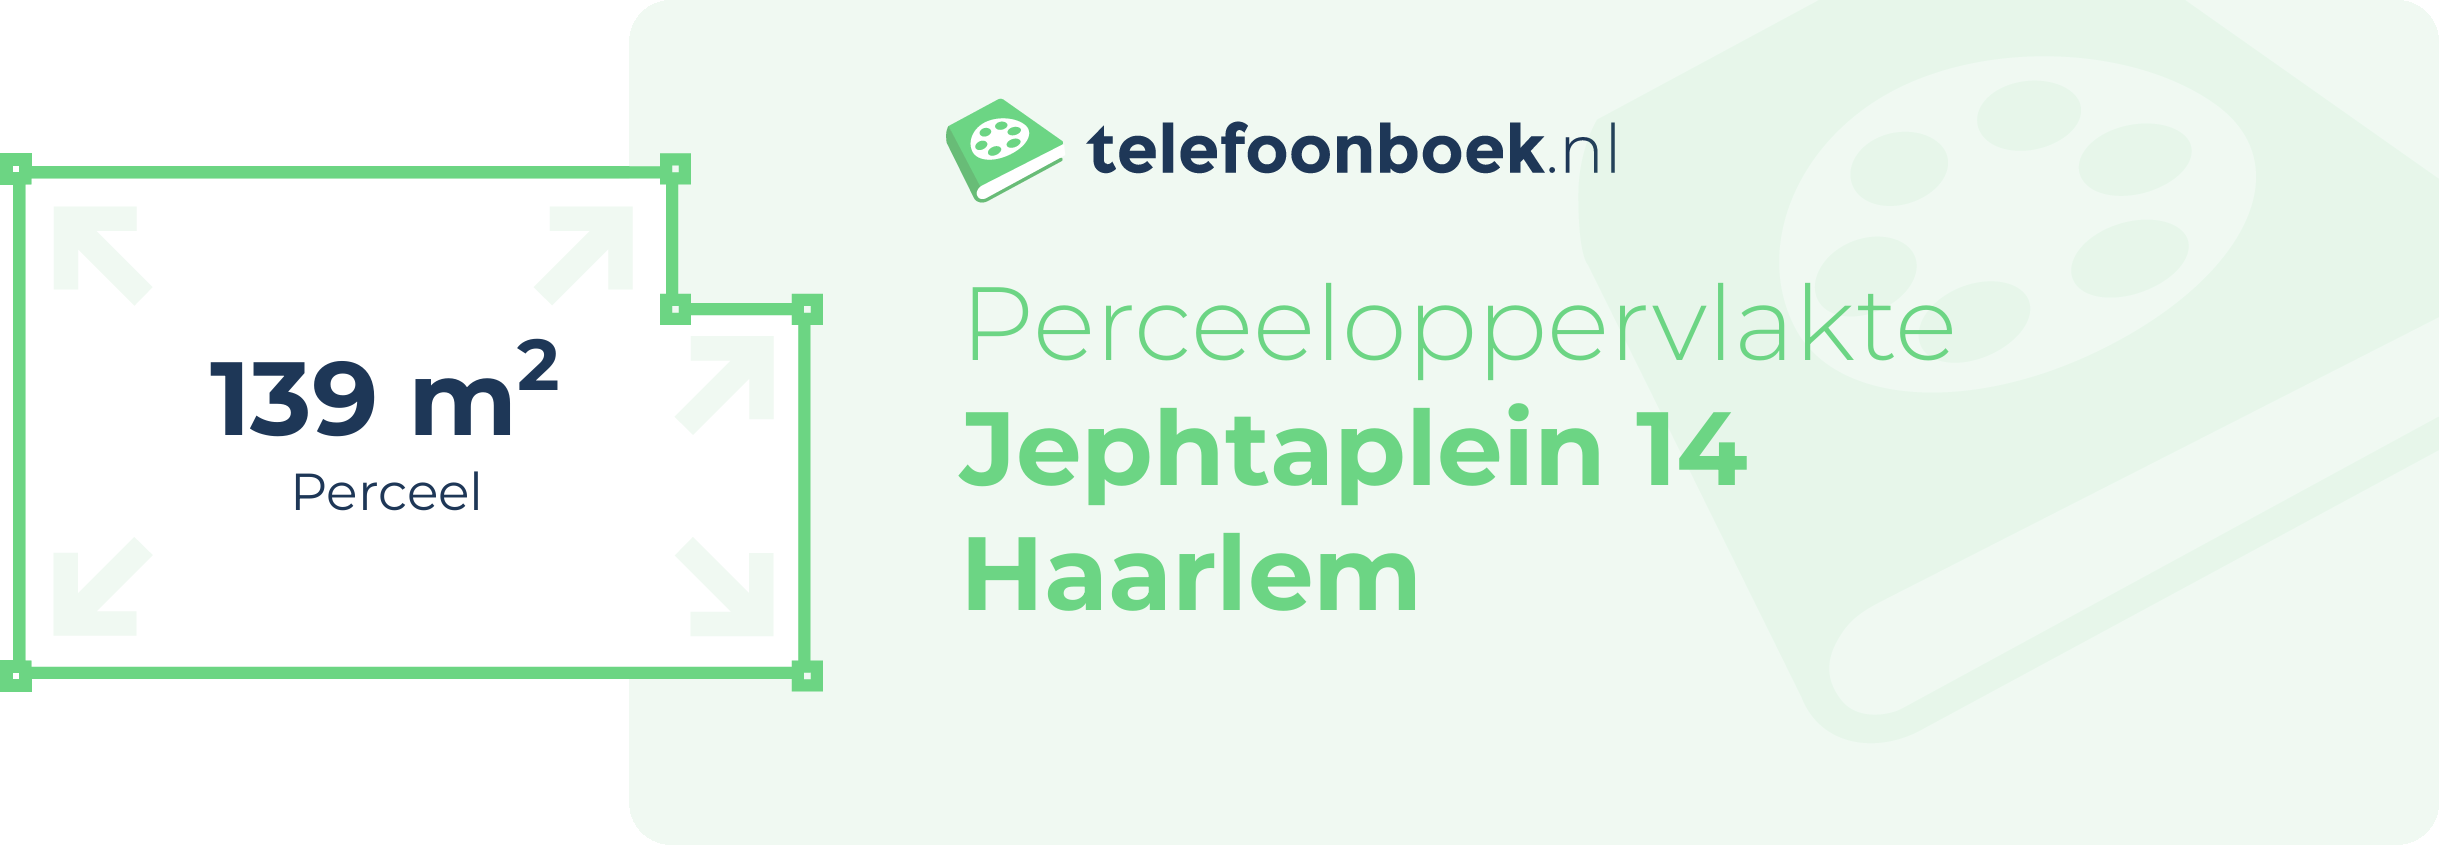 Perceeloppervlakte Jephtaplein 14 Haarlem